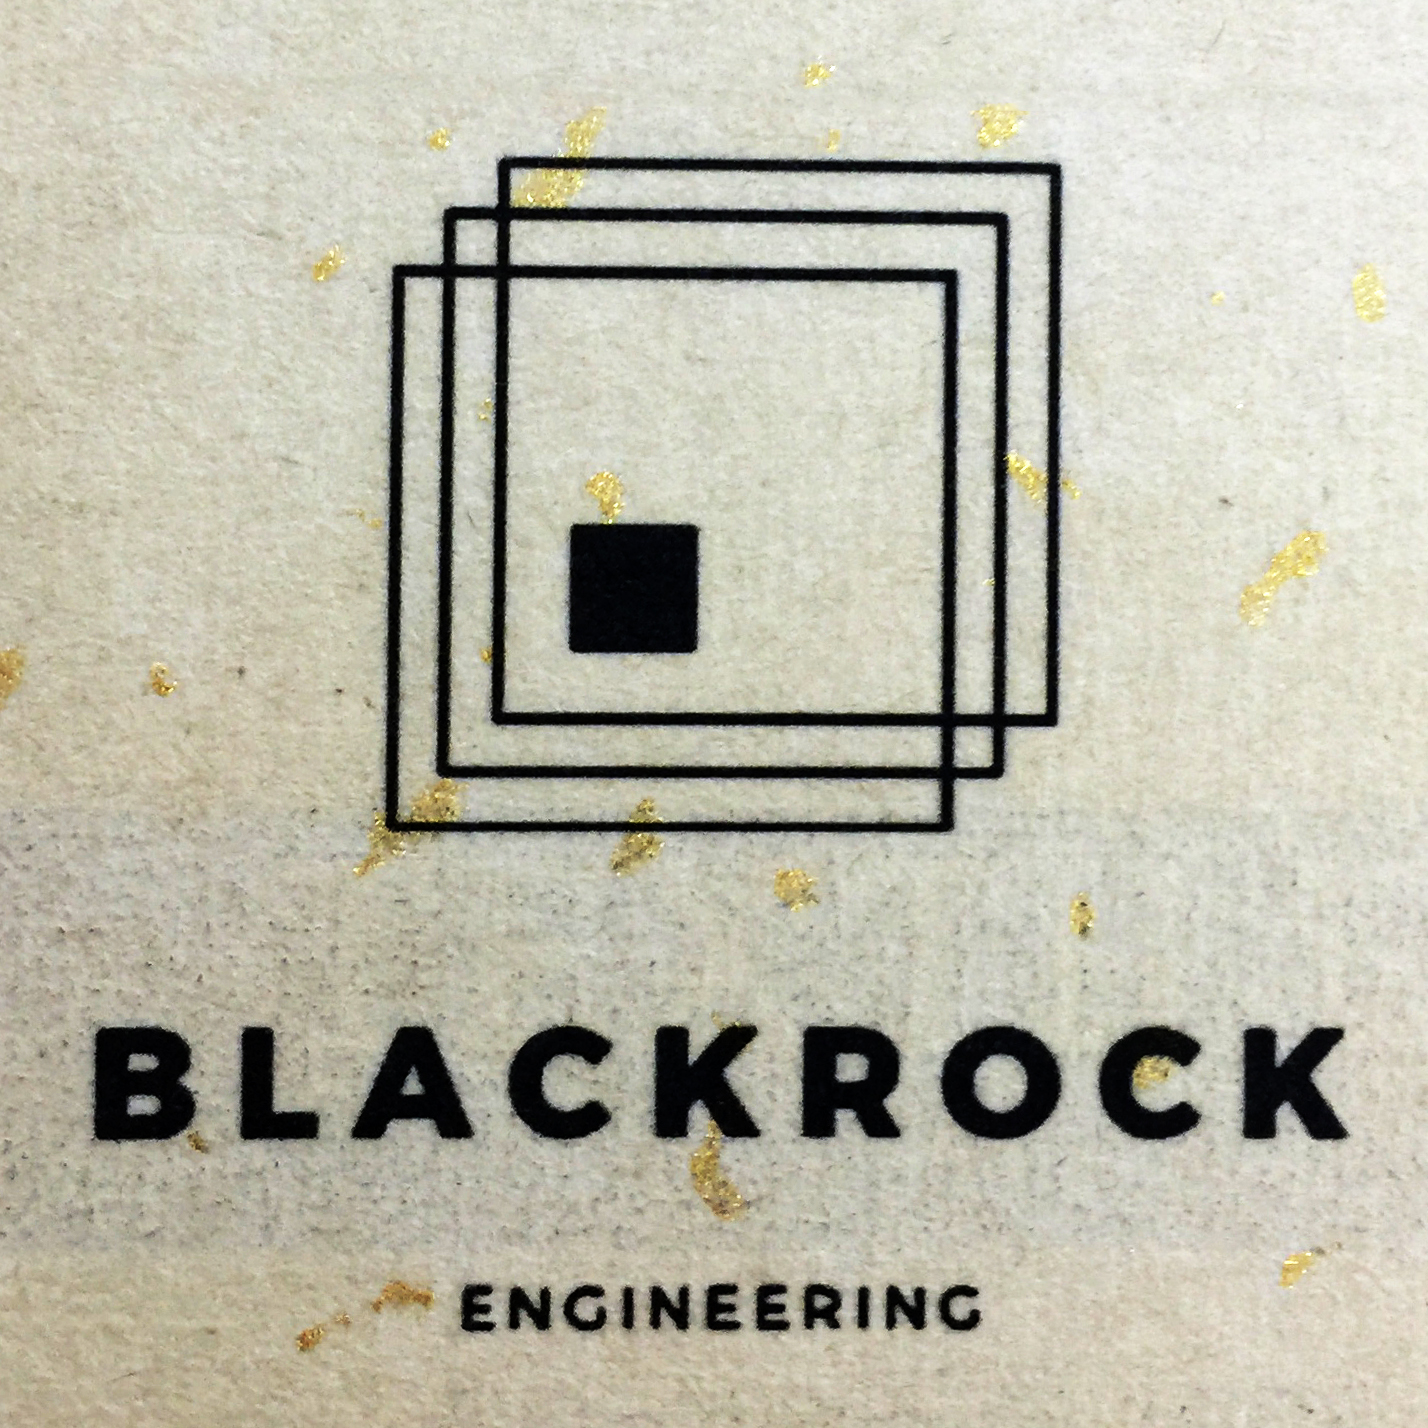 Gold Speckle Vintage Paper Sticker Material, Blackrock Engineering